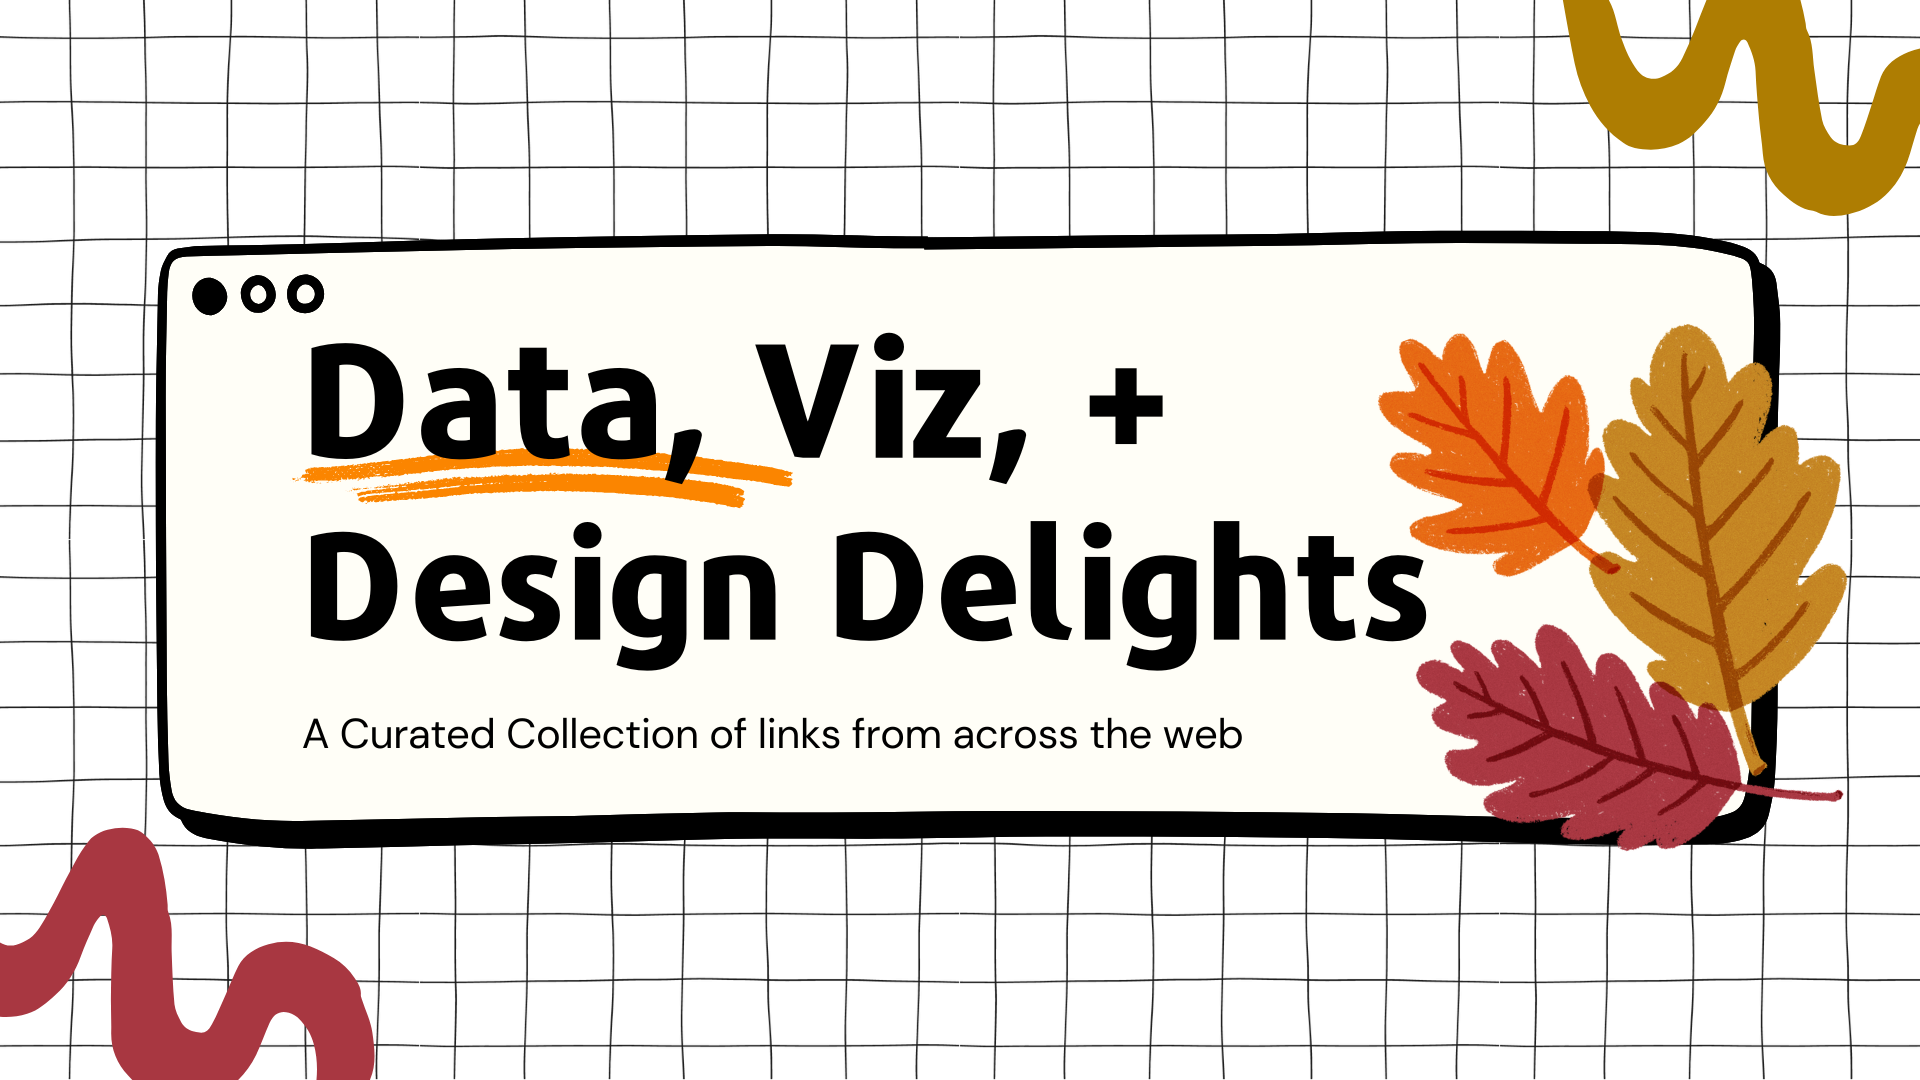 Data, Viz + Design Delights